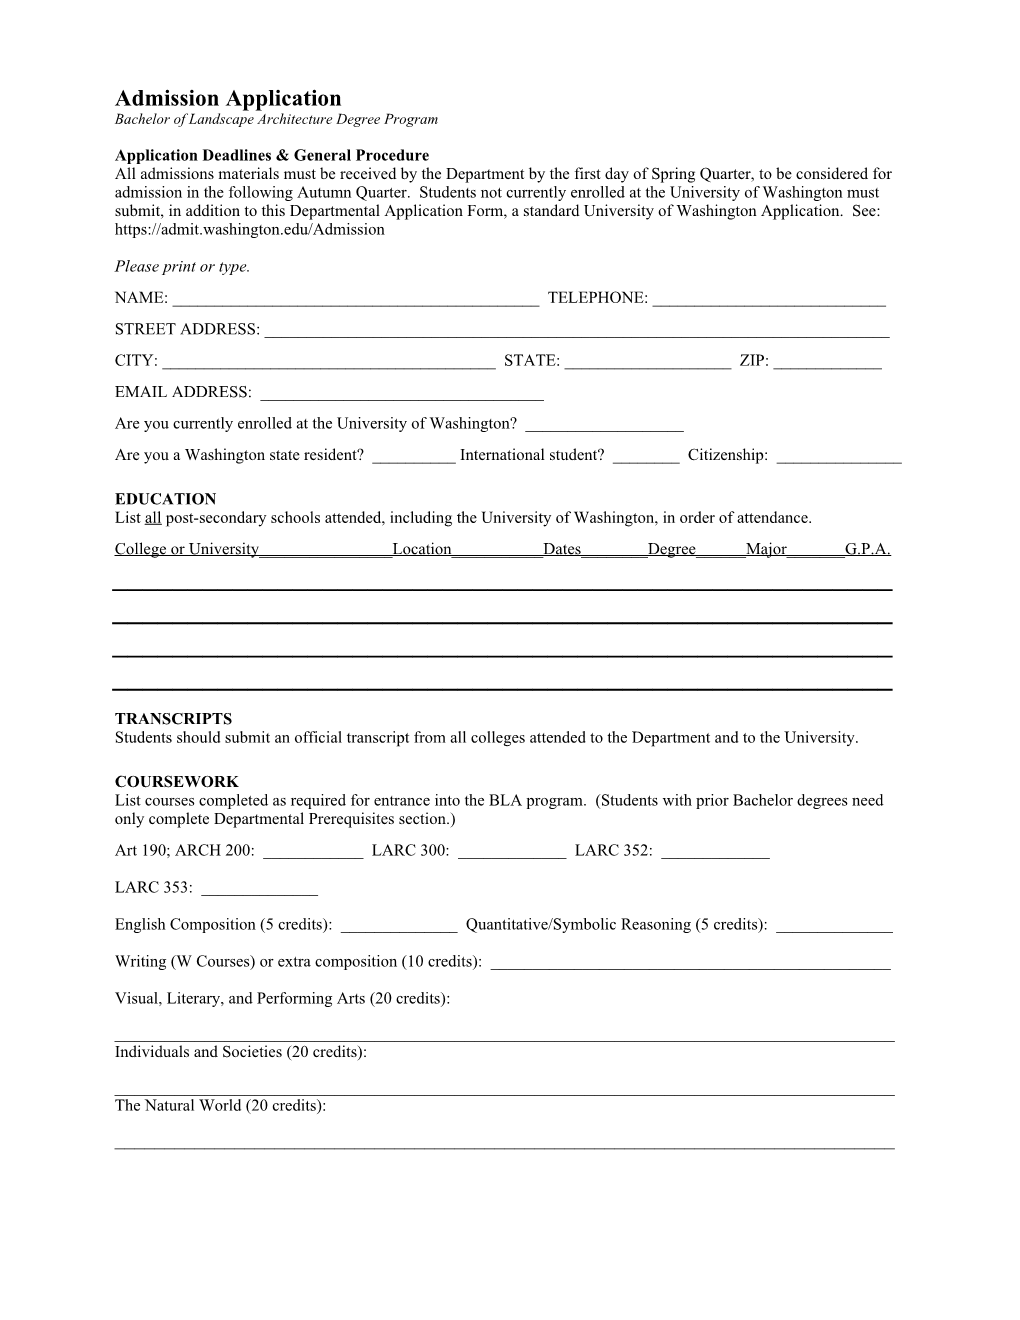 Application Deadlines & General Procedure